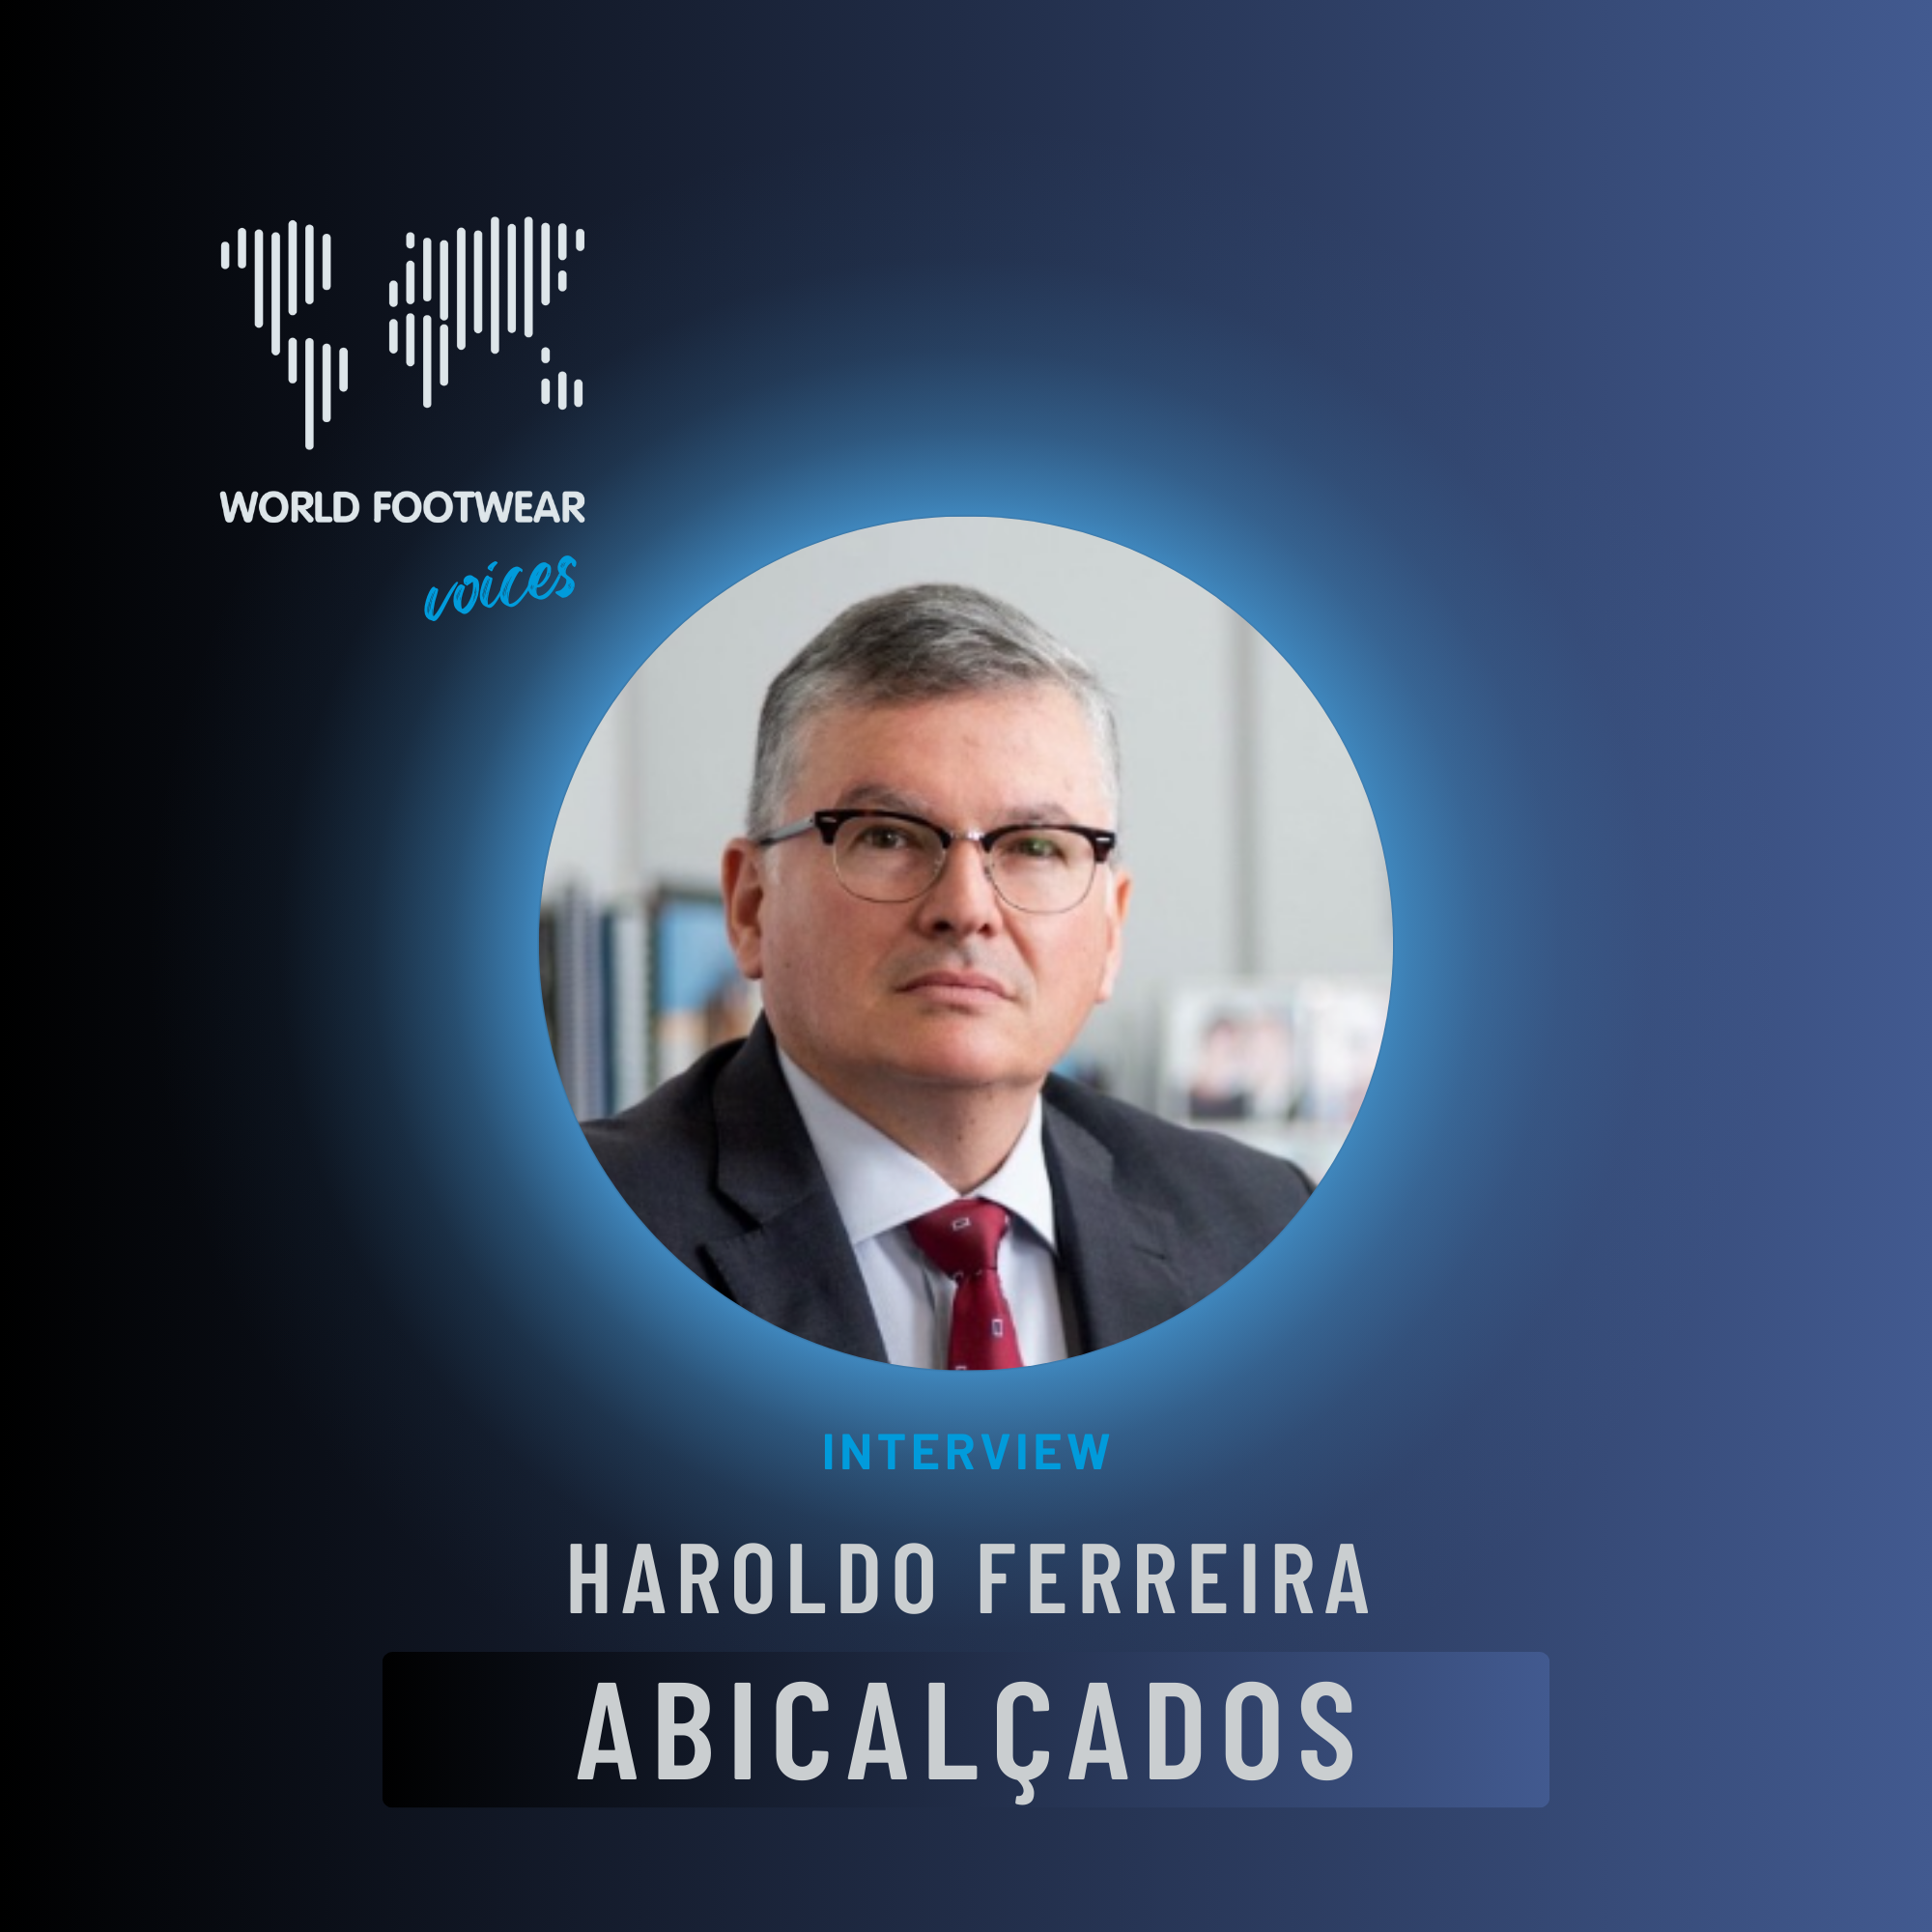 World Footwear Voices: interview with Haroldo Ferreira from ABICALÇADOS